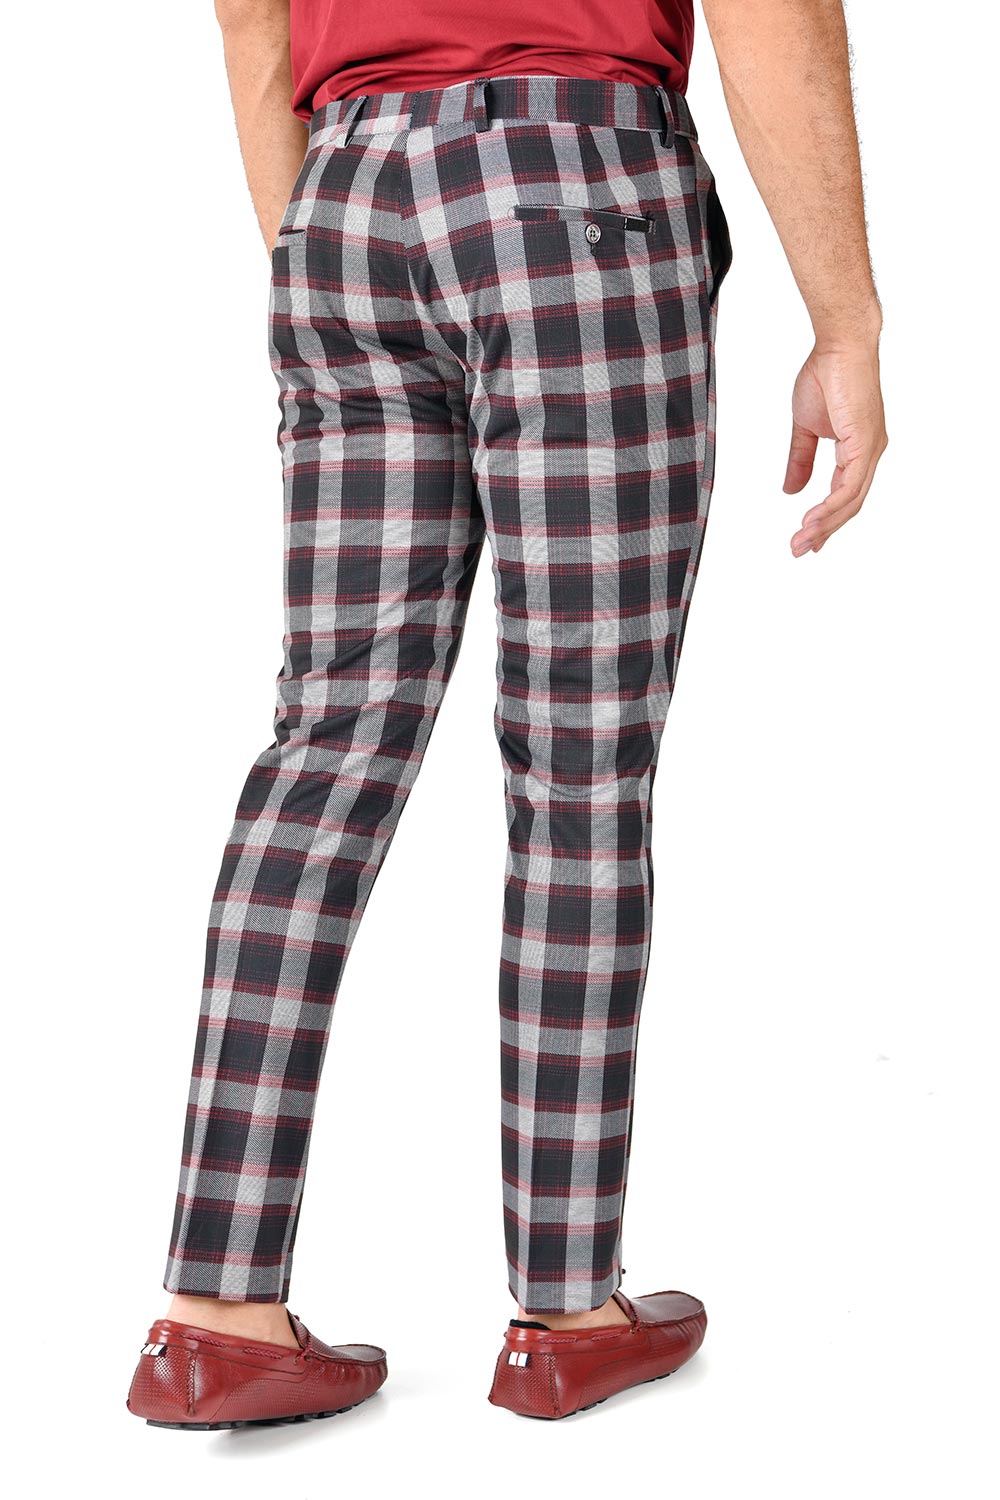 BARABAS men's checkered plaid grey pink chino pants CP117